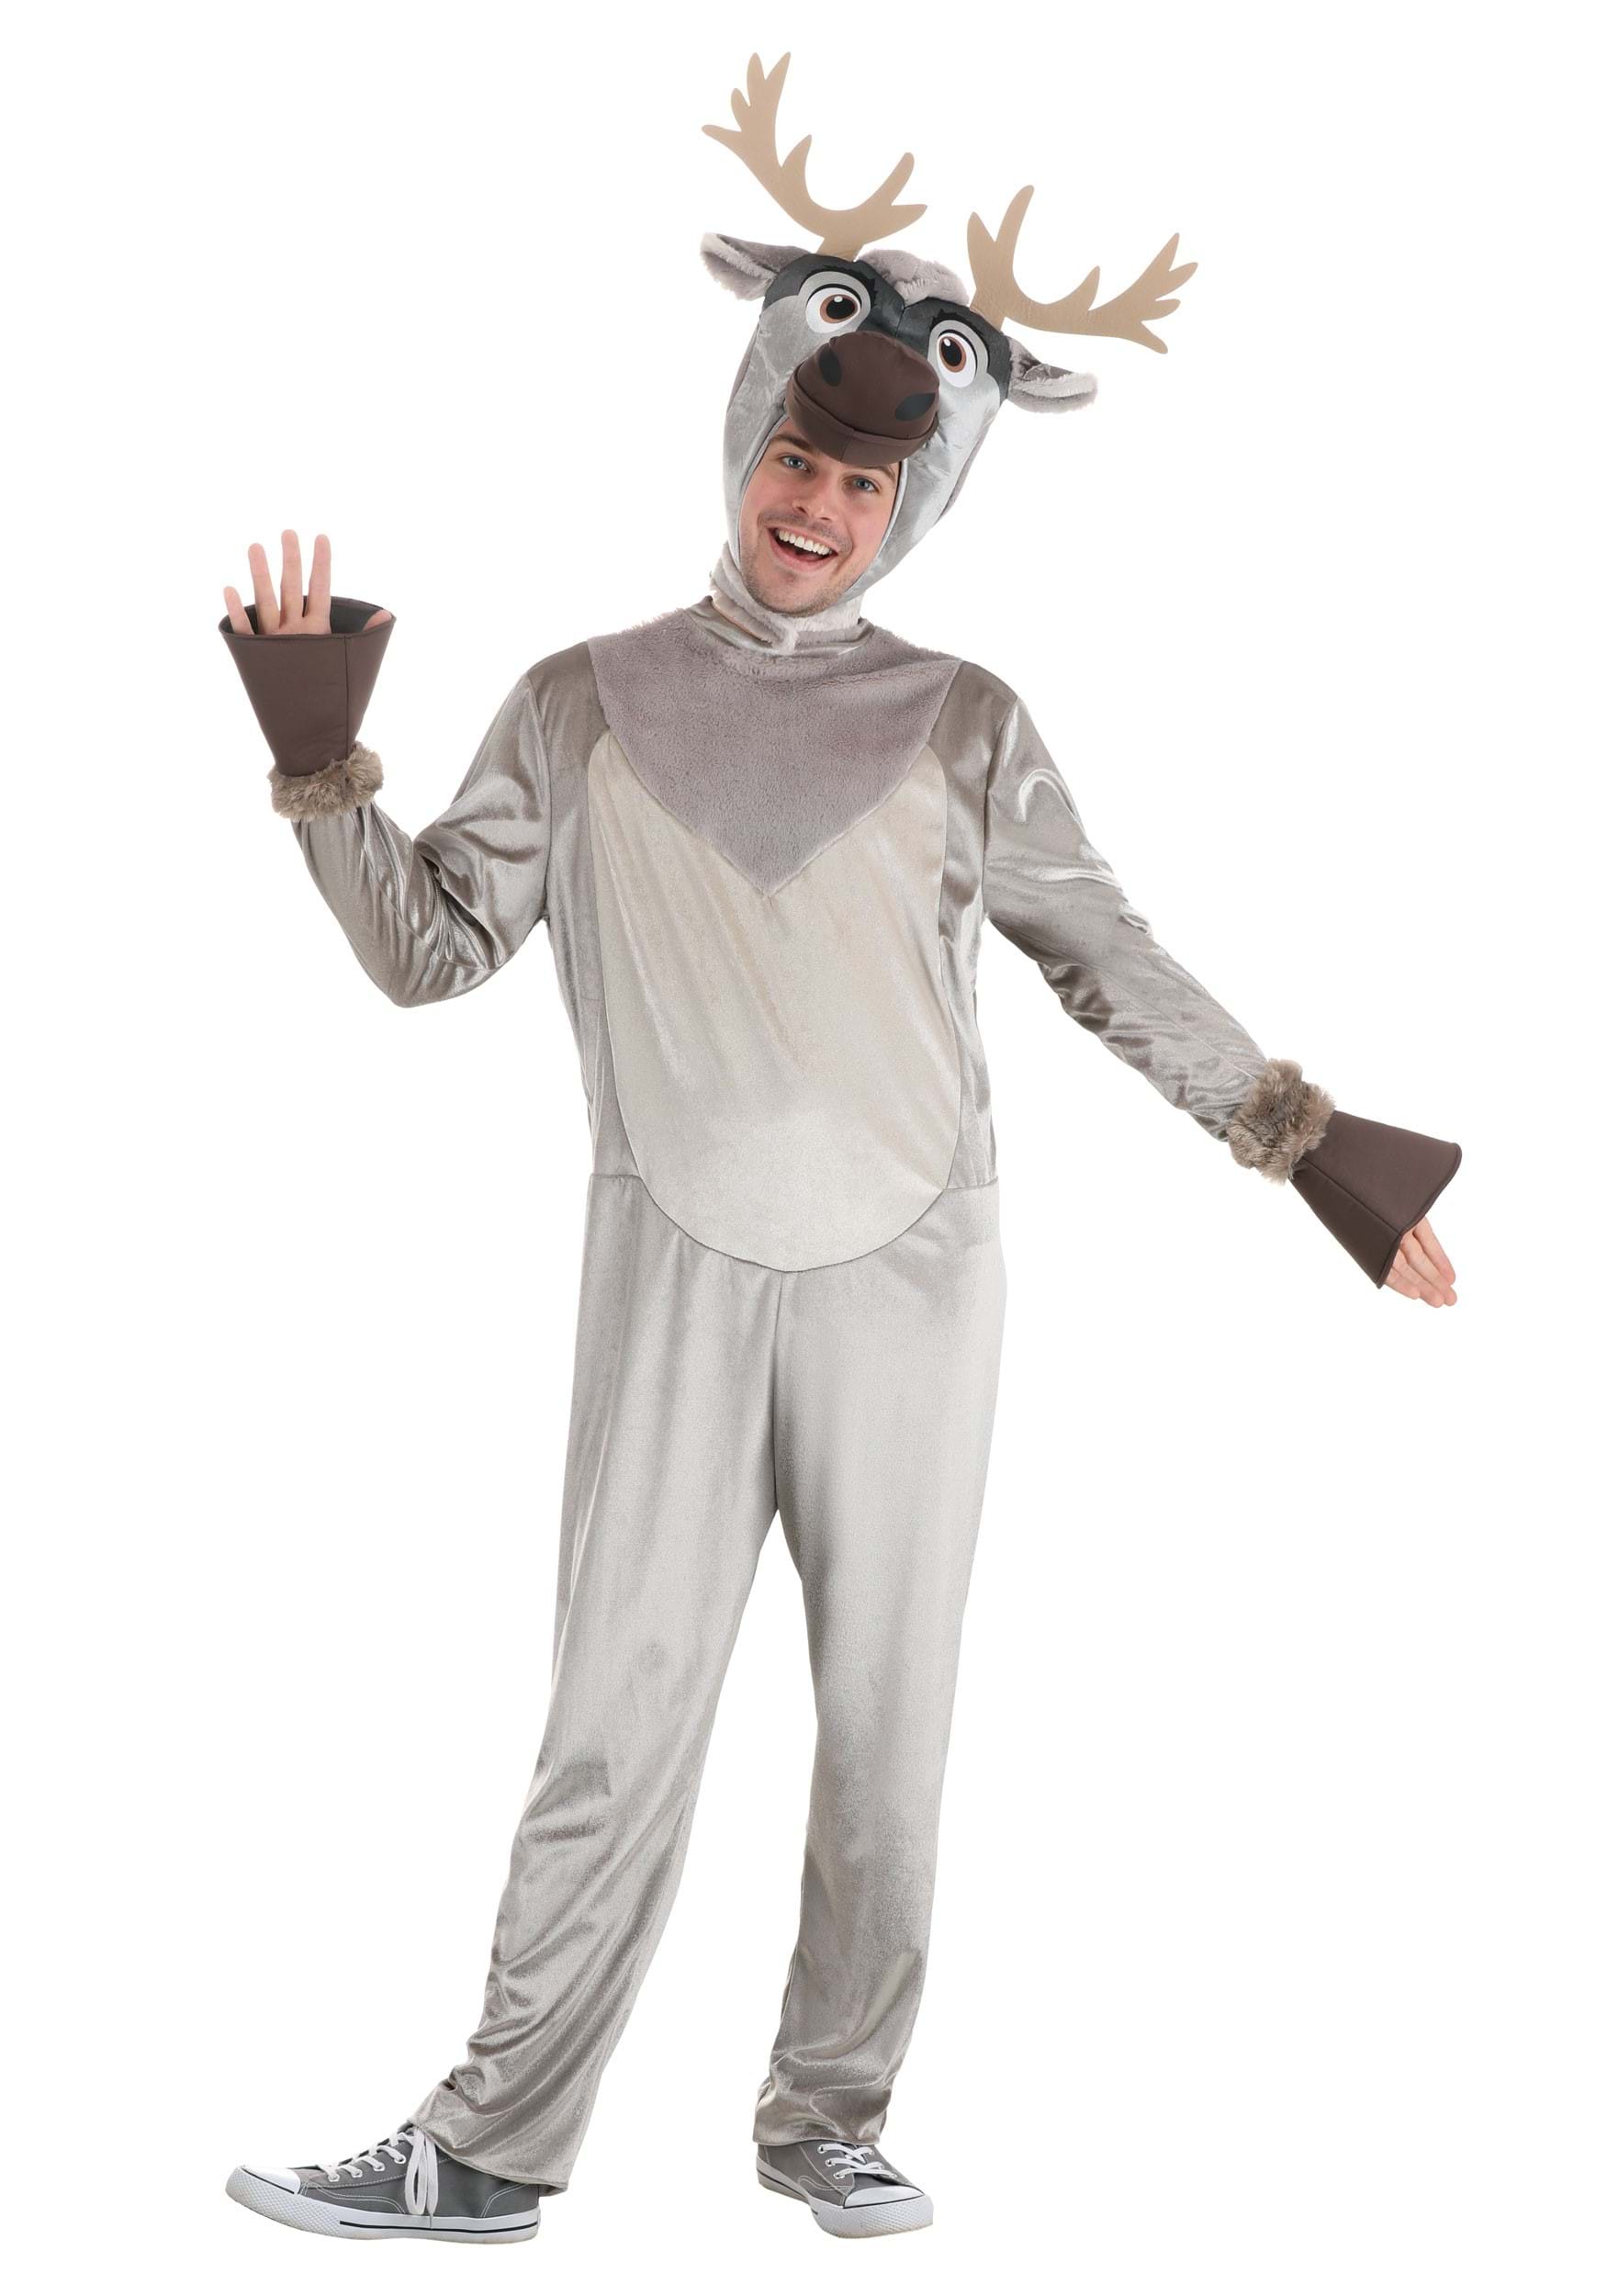 https://images.halloween.com/products/75788/1-1/frozen-adult-sven-costume.jpg